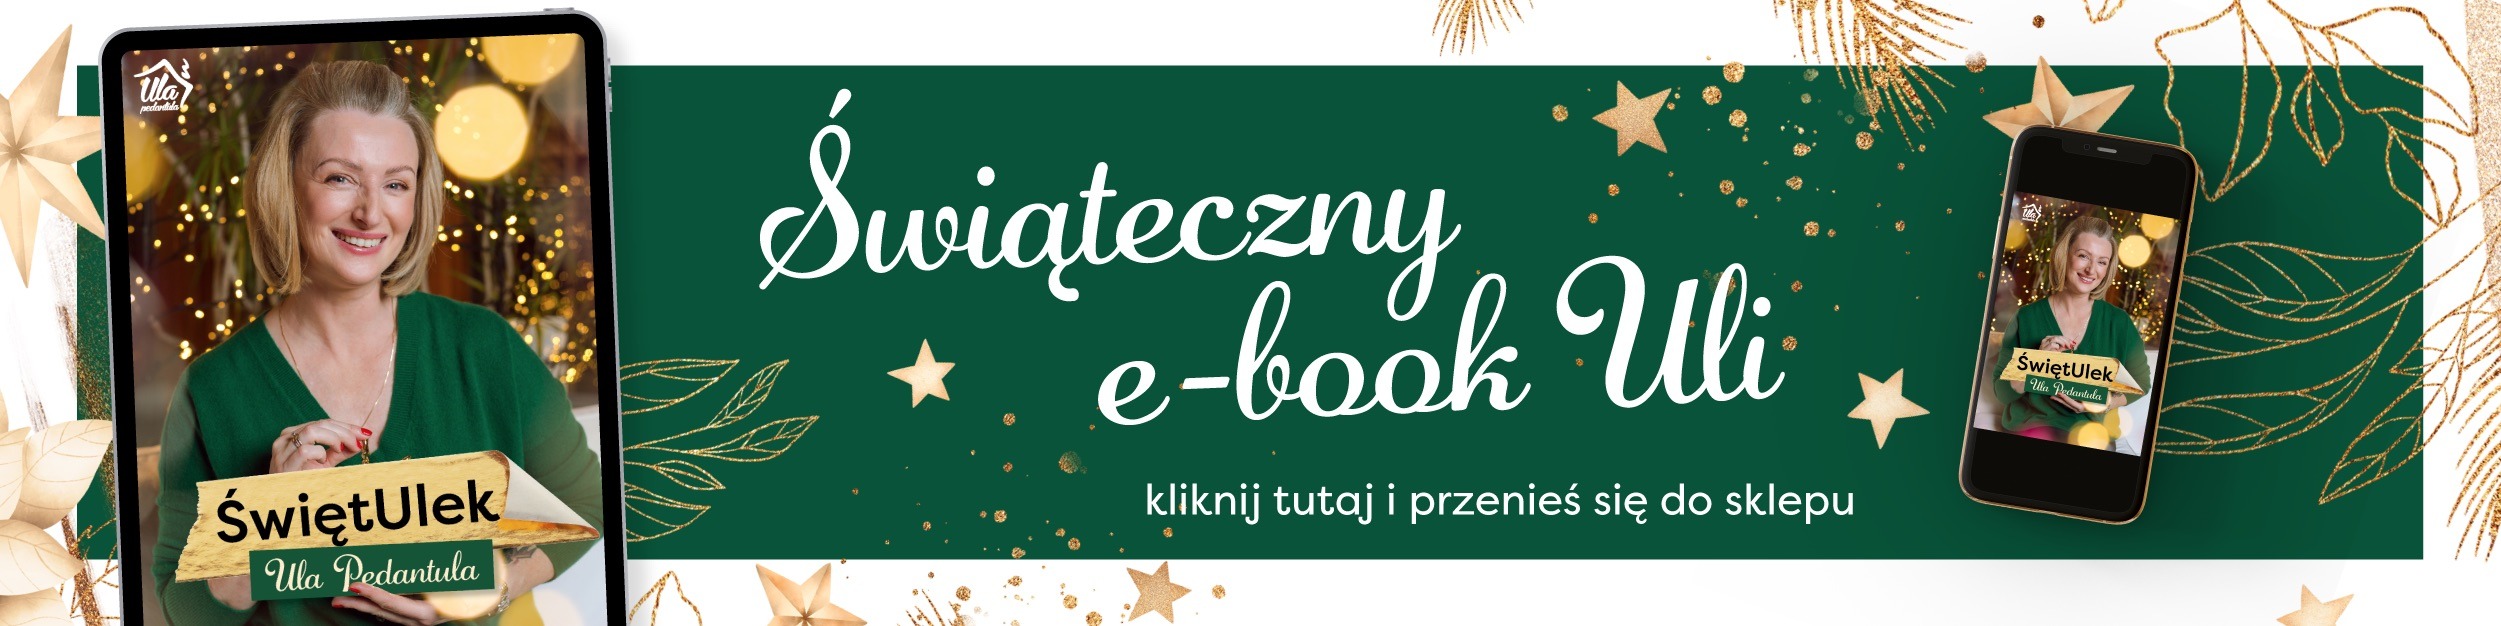 ŚwiętUlek ebook świąteczny Uli Pedantuli